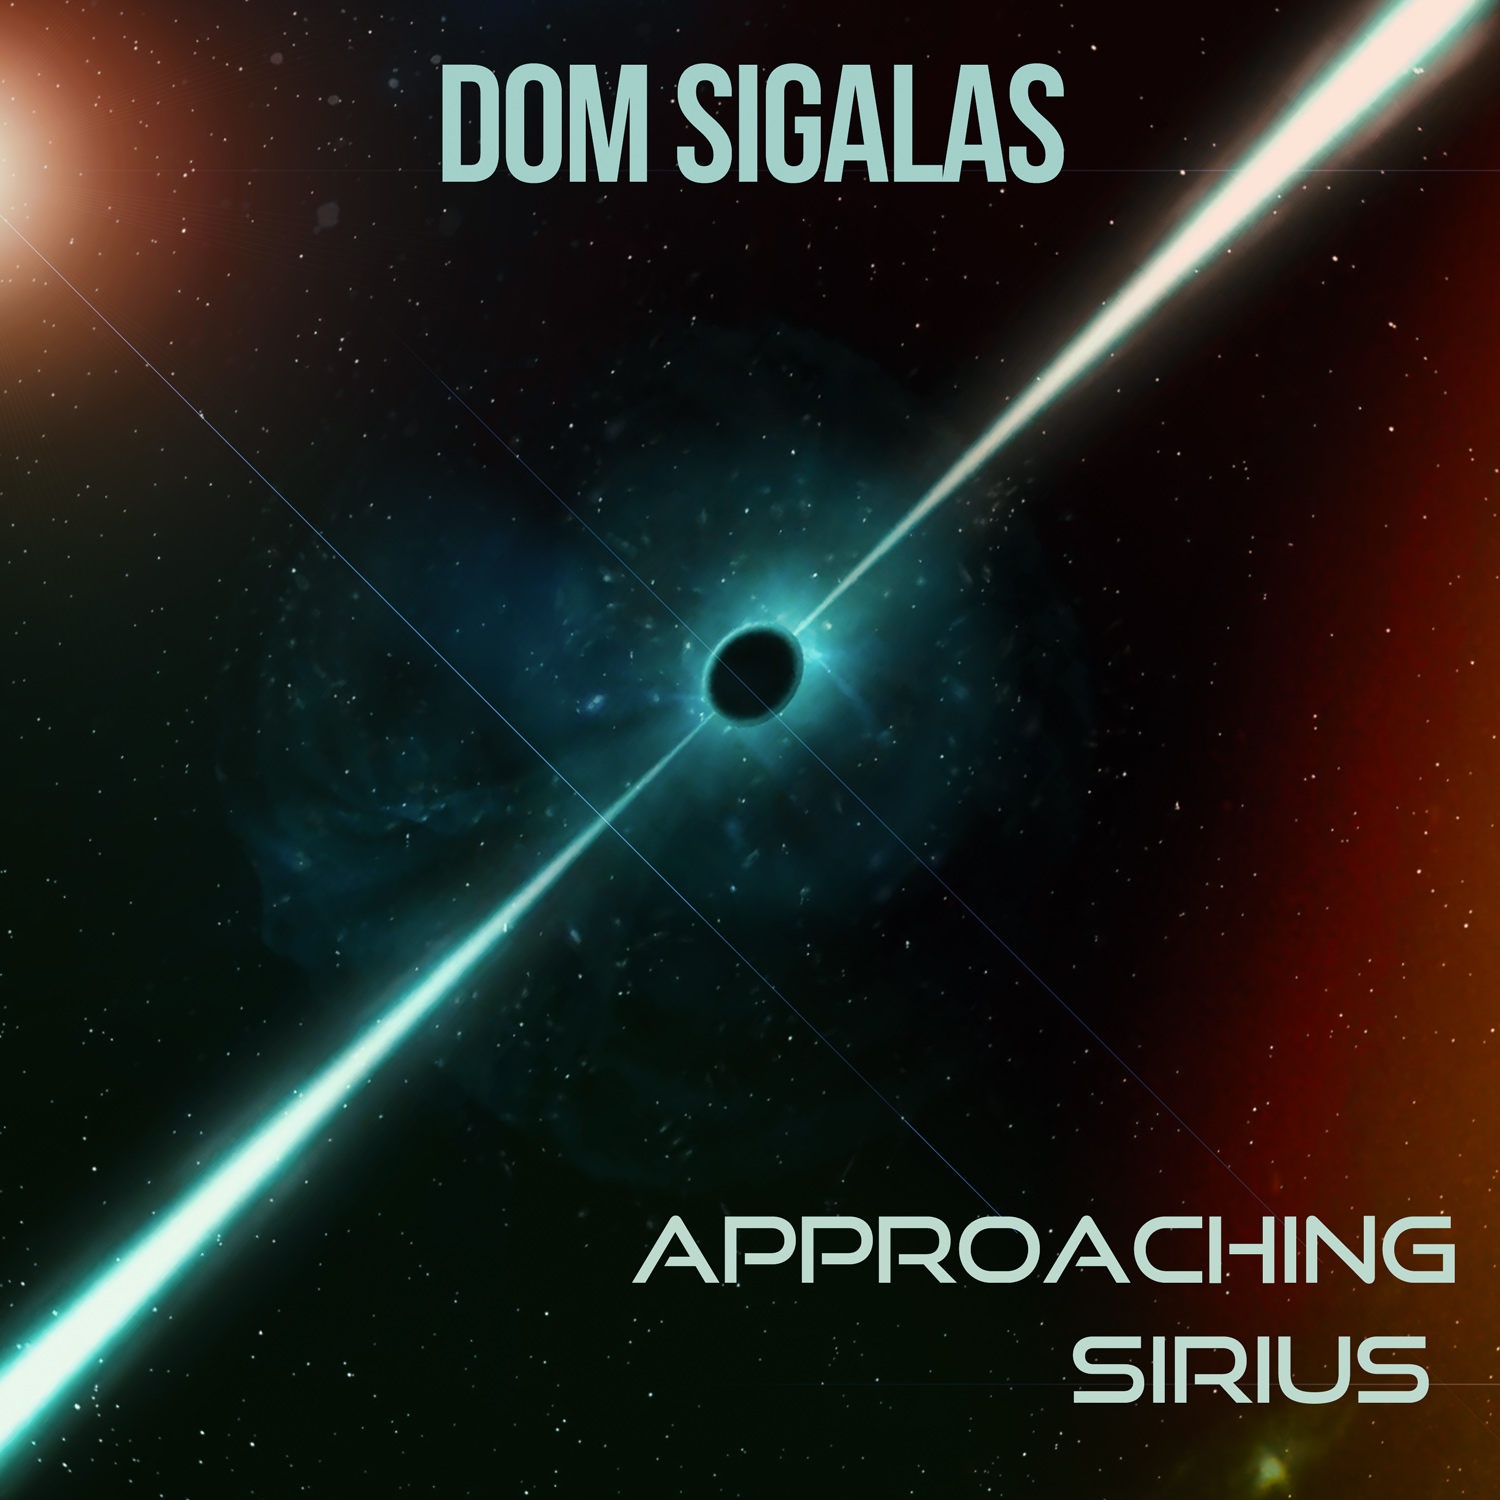 Approaching Sirius